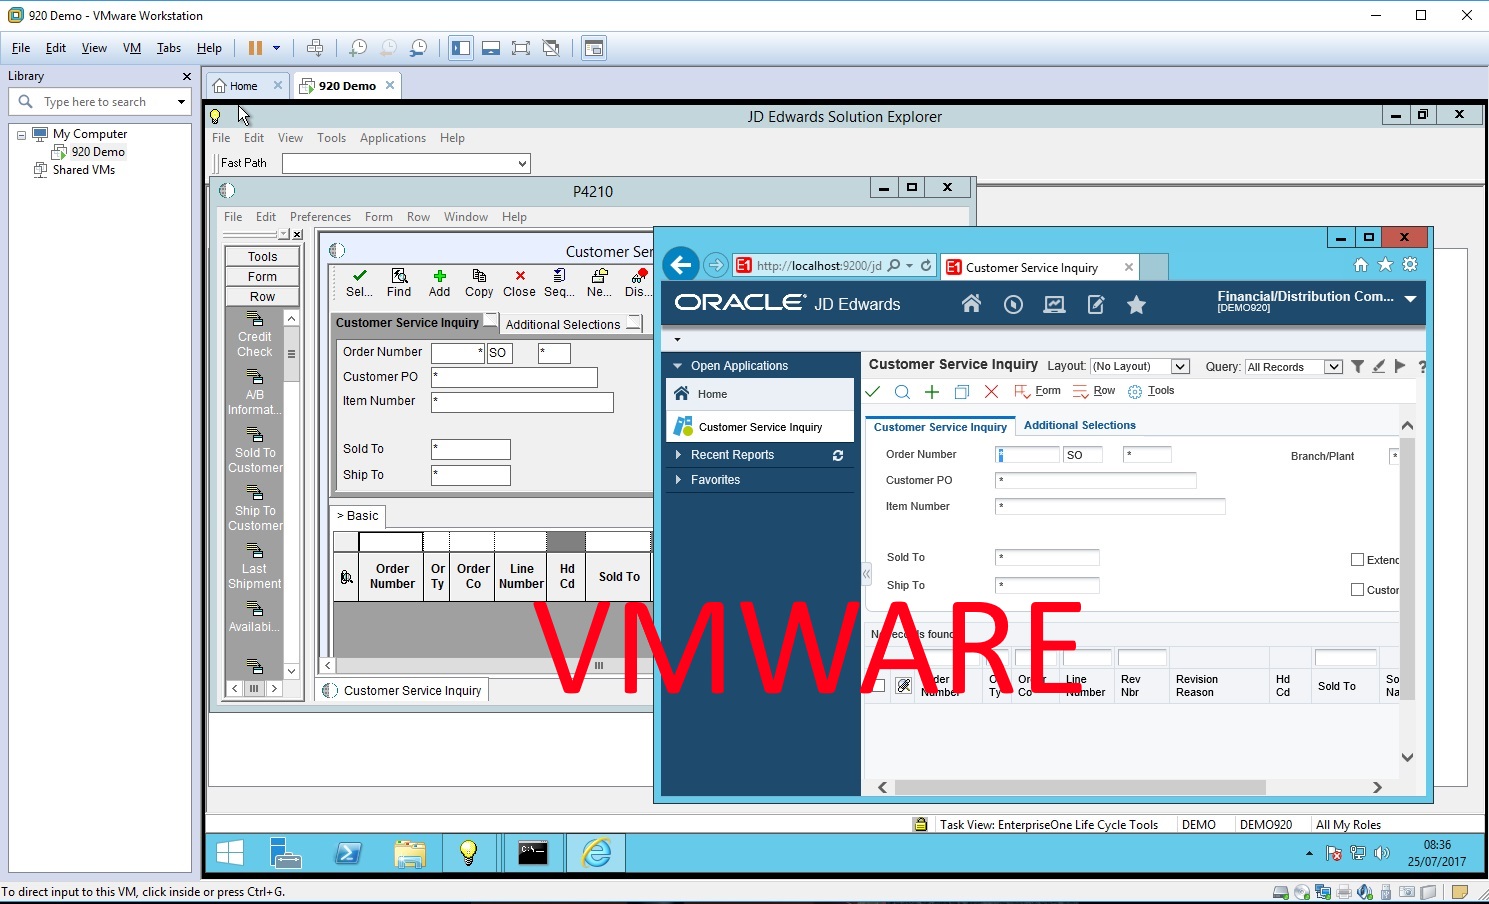 Screenshot of JDE920 Demo VM running on VMWare Workstation